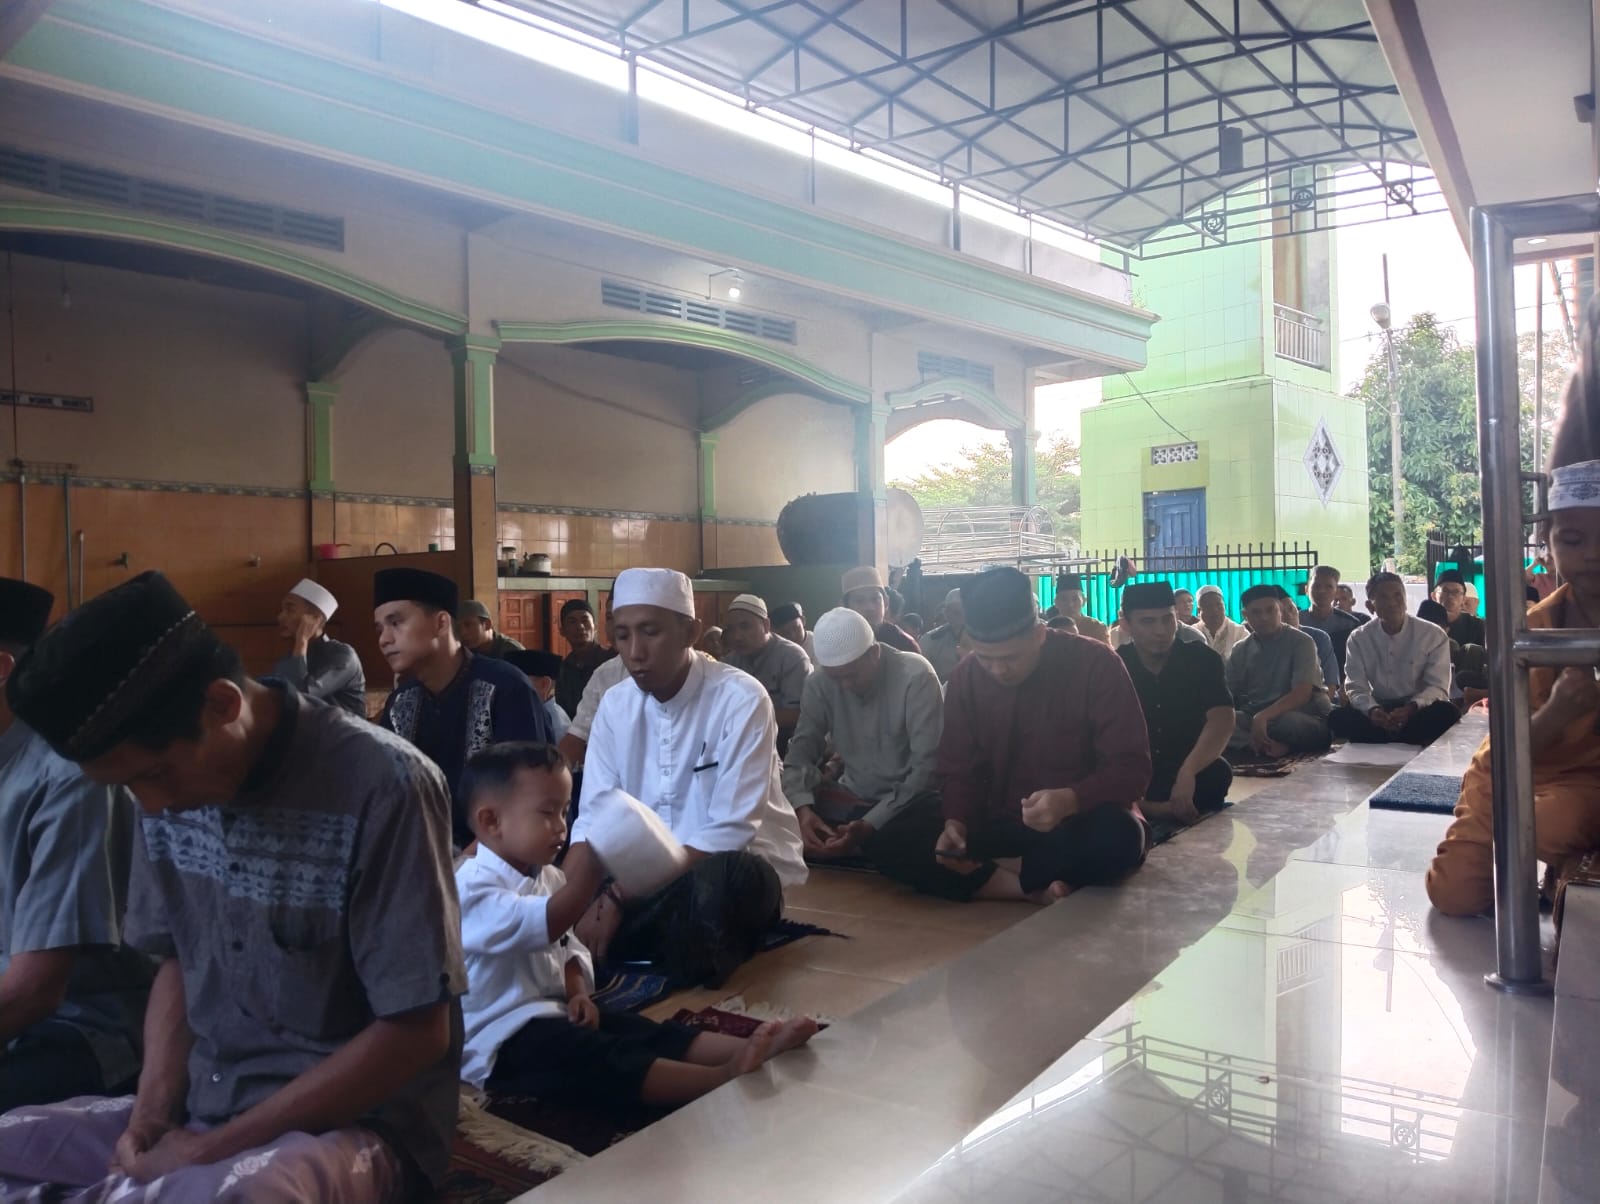 Salat Ied Idulfitri di Sugih Waras, Warga Penuhi Masjid Istiqlal